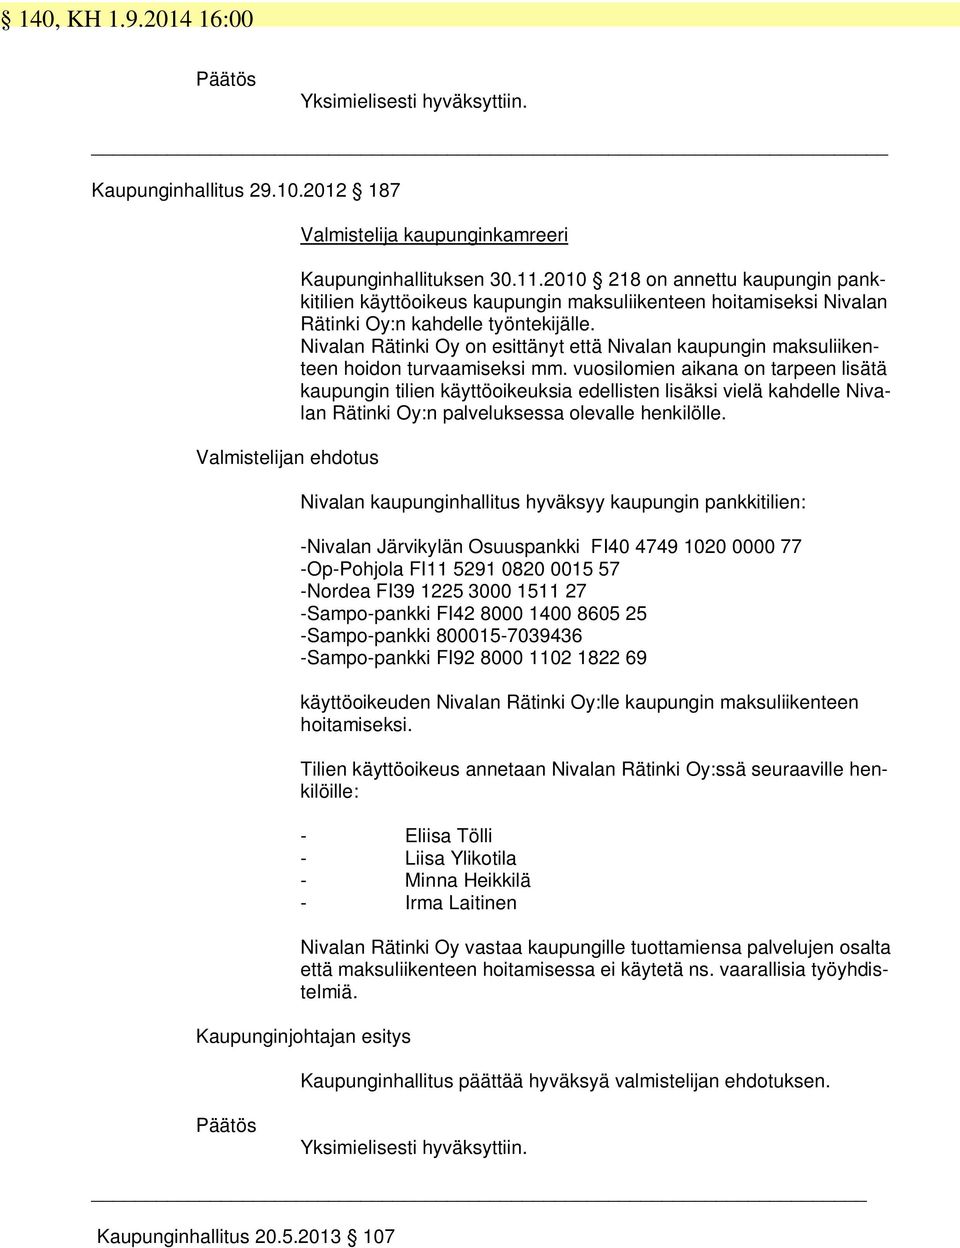 Nivalan Rätinki Oy on esittänyt että Nivalan kaupungin maksuliikenteen hoidon turvaamiseksi mm.